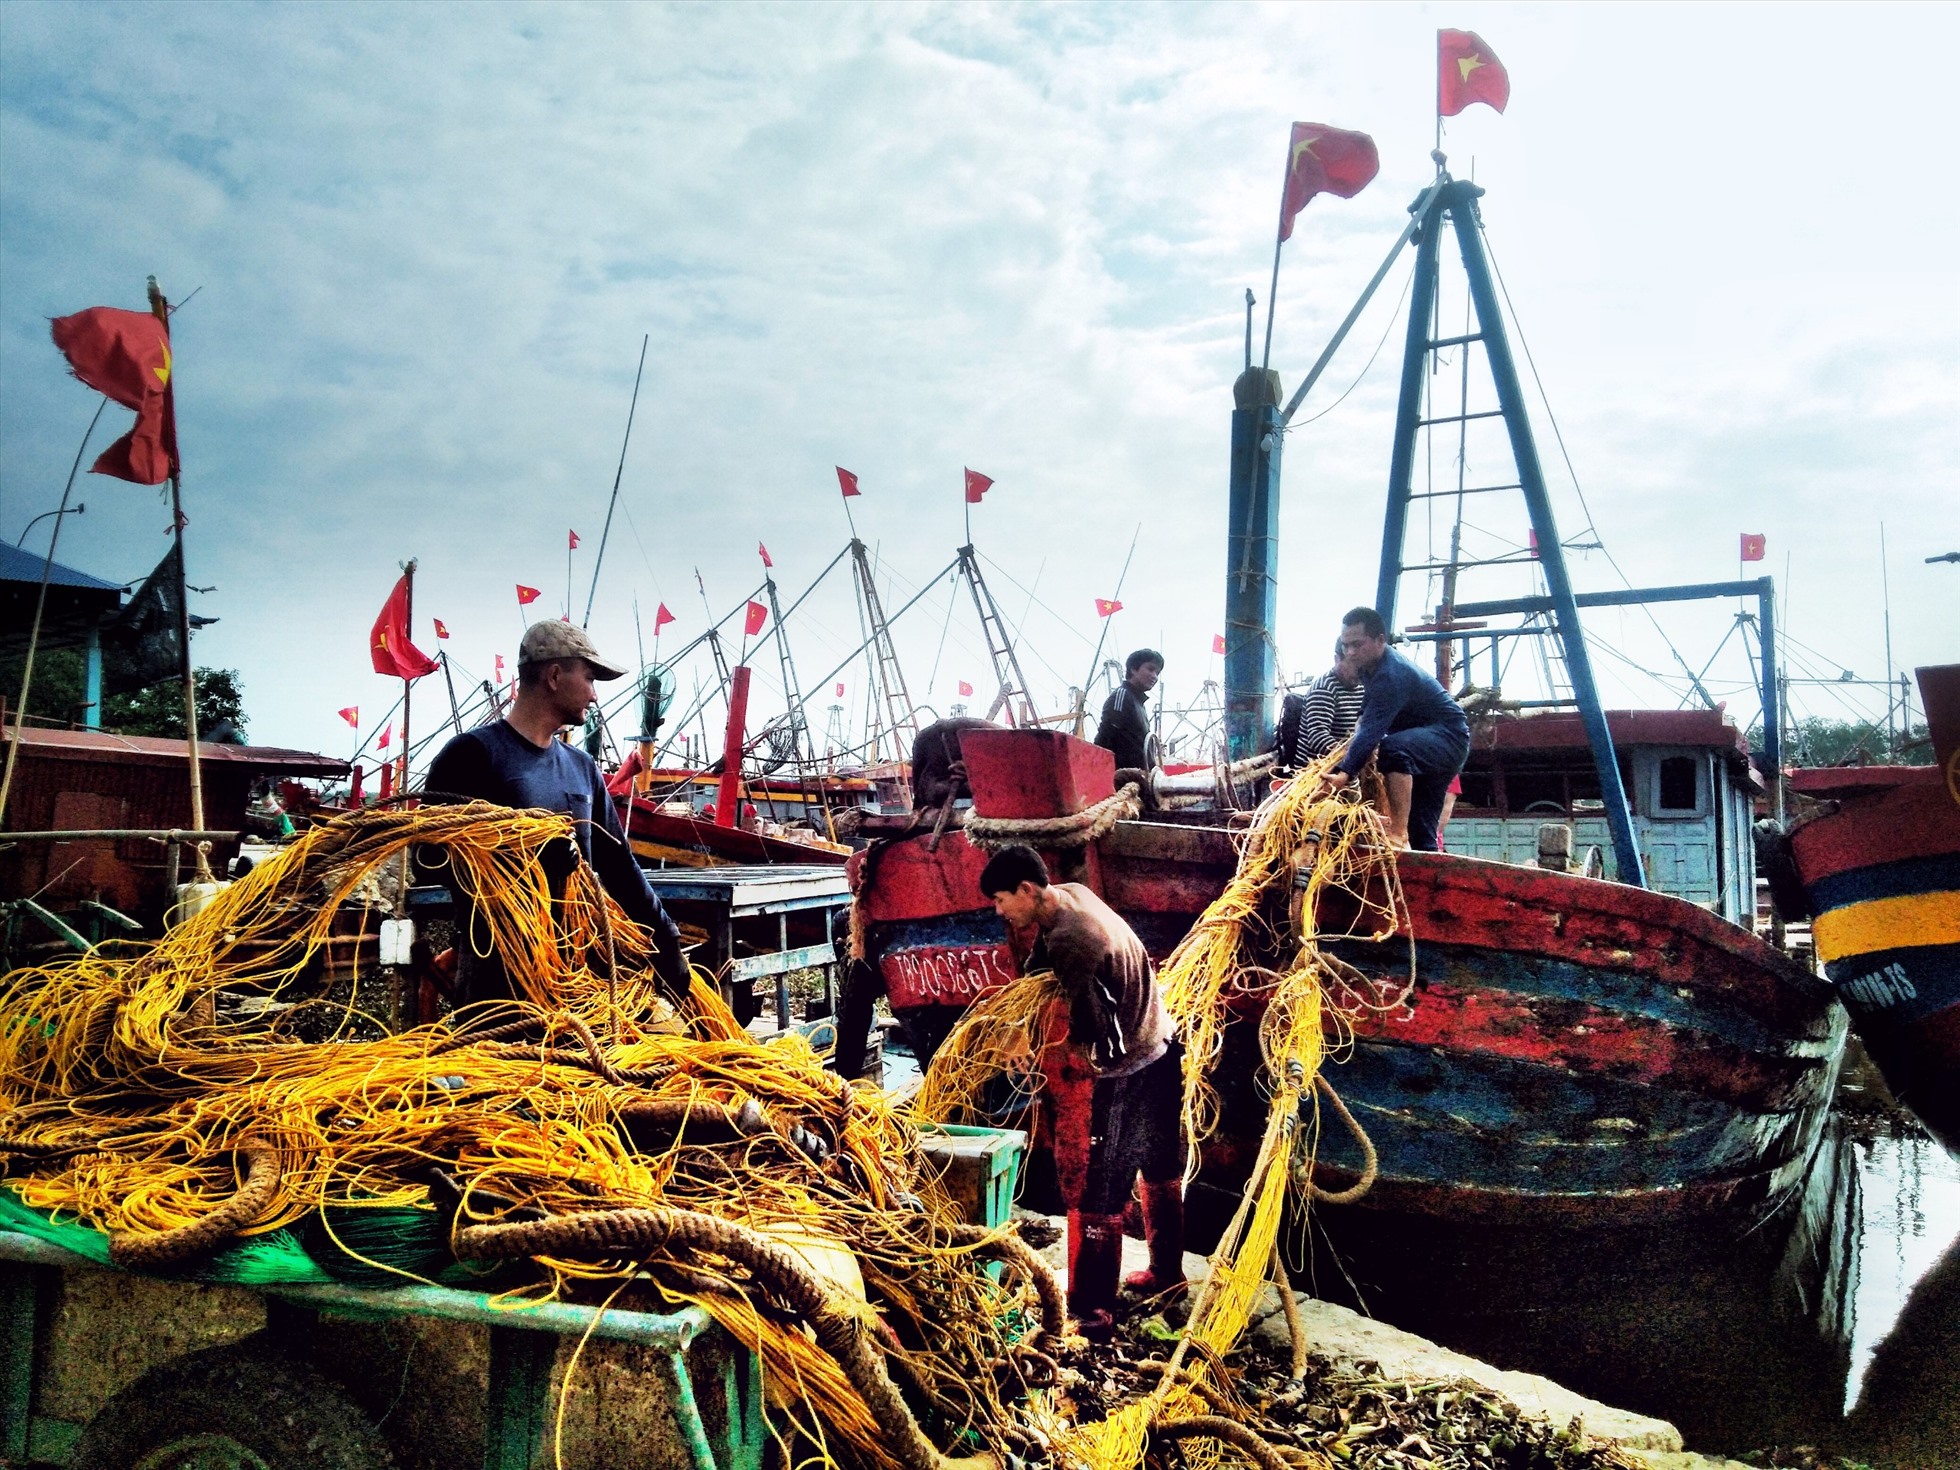 Ngày Mùng 3 Tết, nhiều ngư dân tại vùng biển Thị trấn Diêm Điền (huyện Thái Thụy, tỉnh Thái Bình) đã hối hả ra khơi lấy may đầu năm mới. Ảnh: Lương Hà